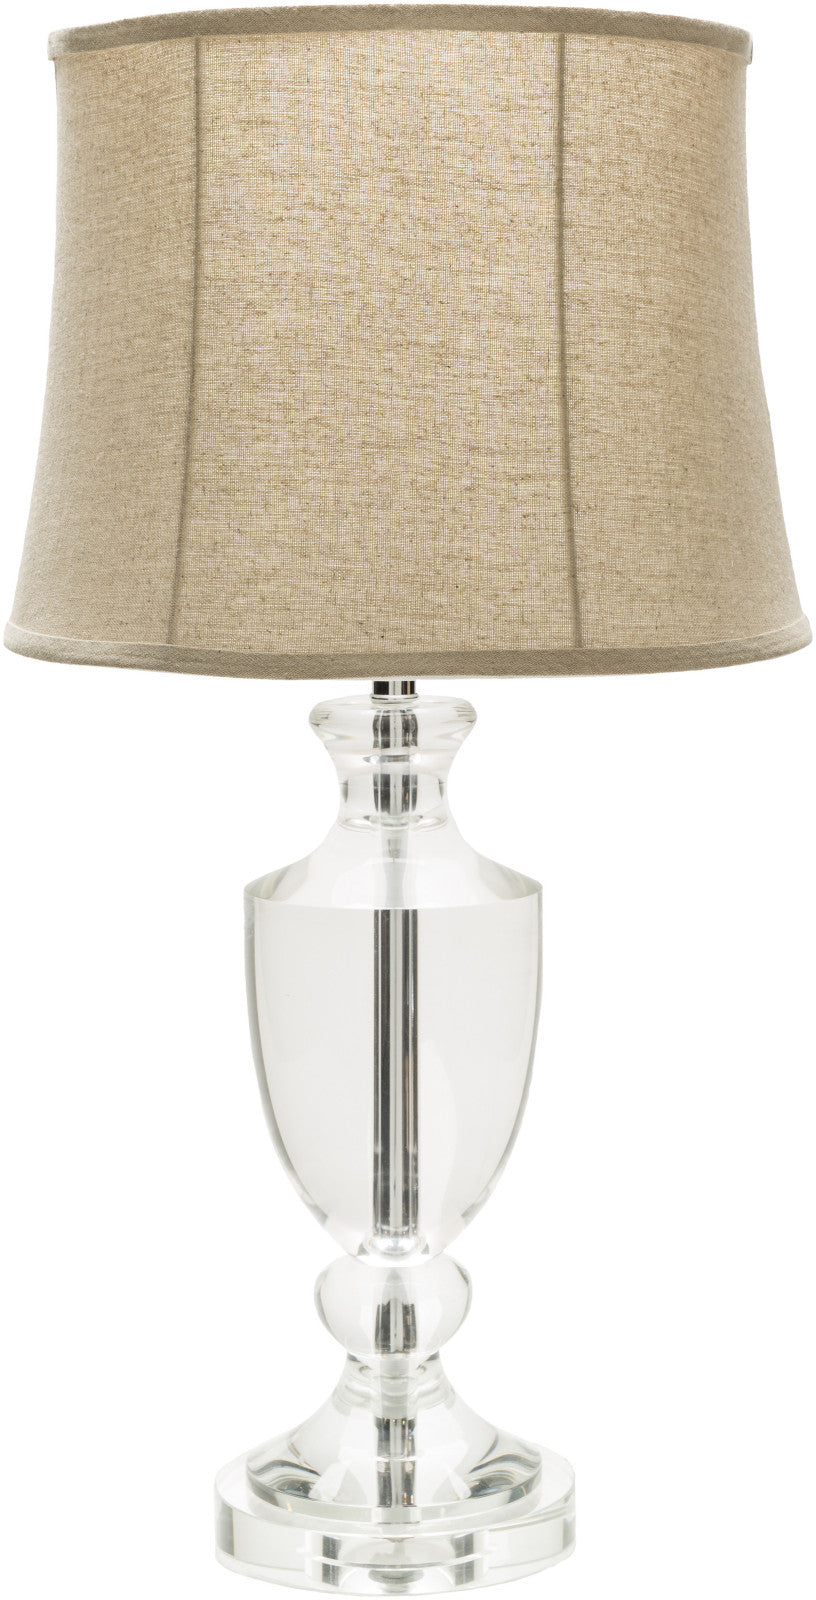 Surya Ellie EILP-001 ivory Lamp Table Lamp